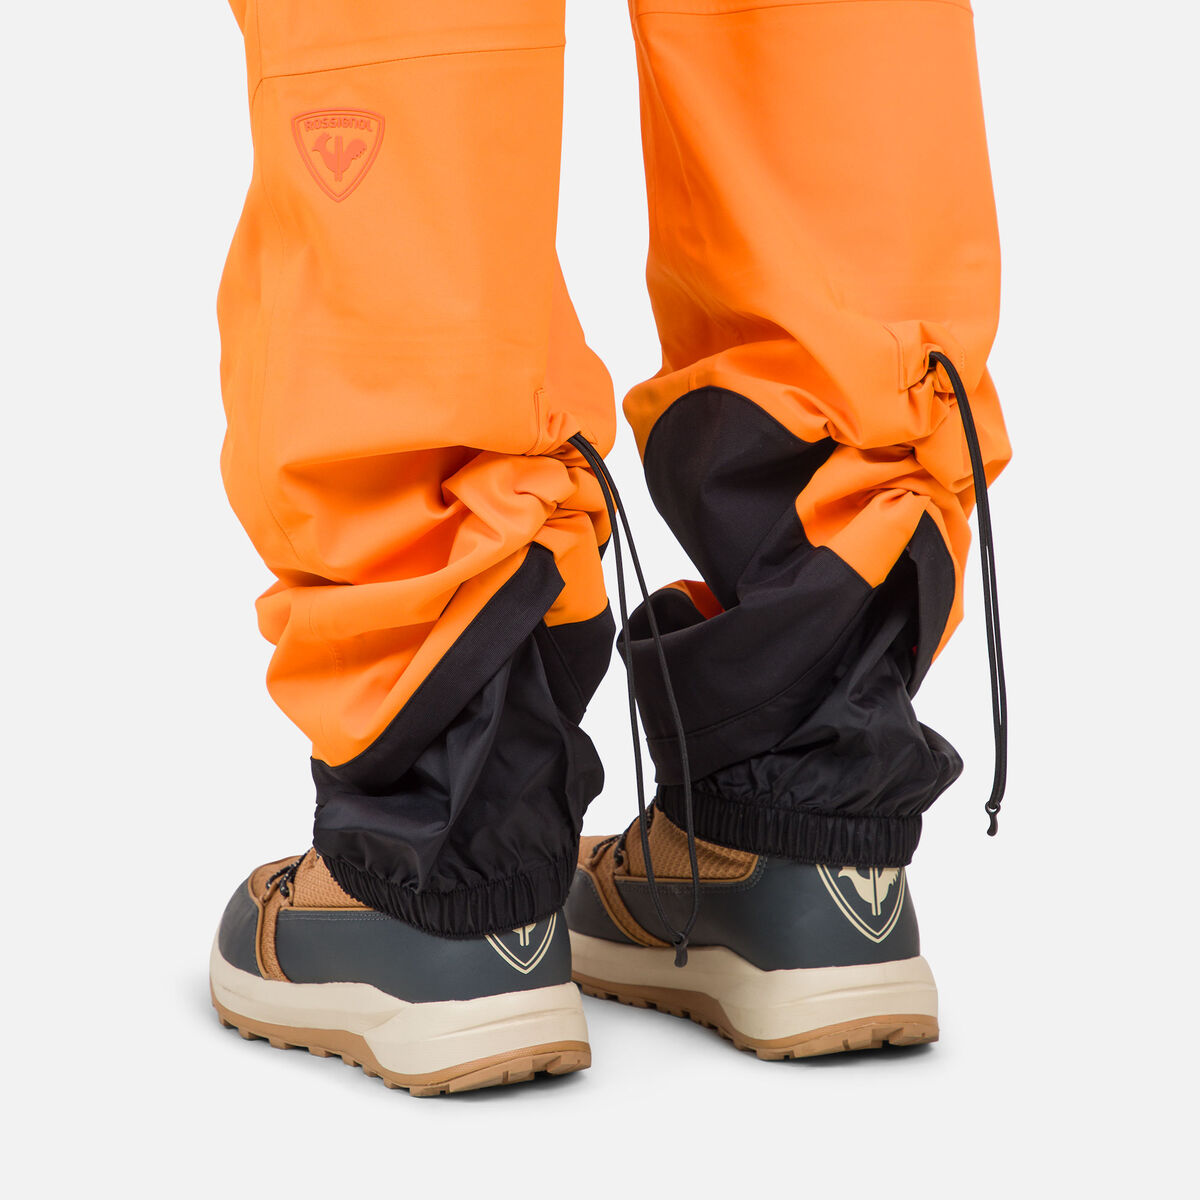 Rossignol Pantalon de ski Evader homme orange